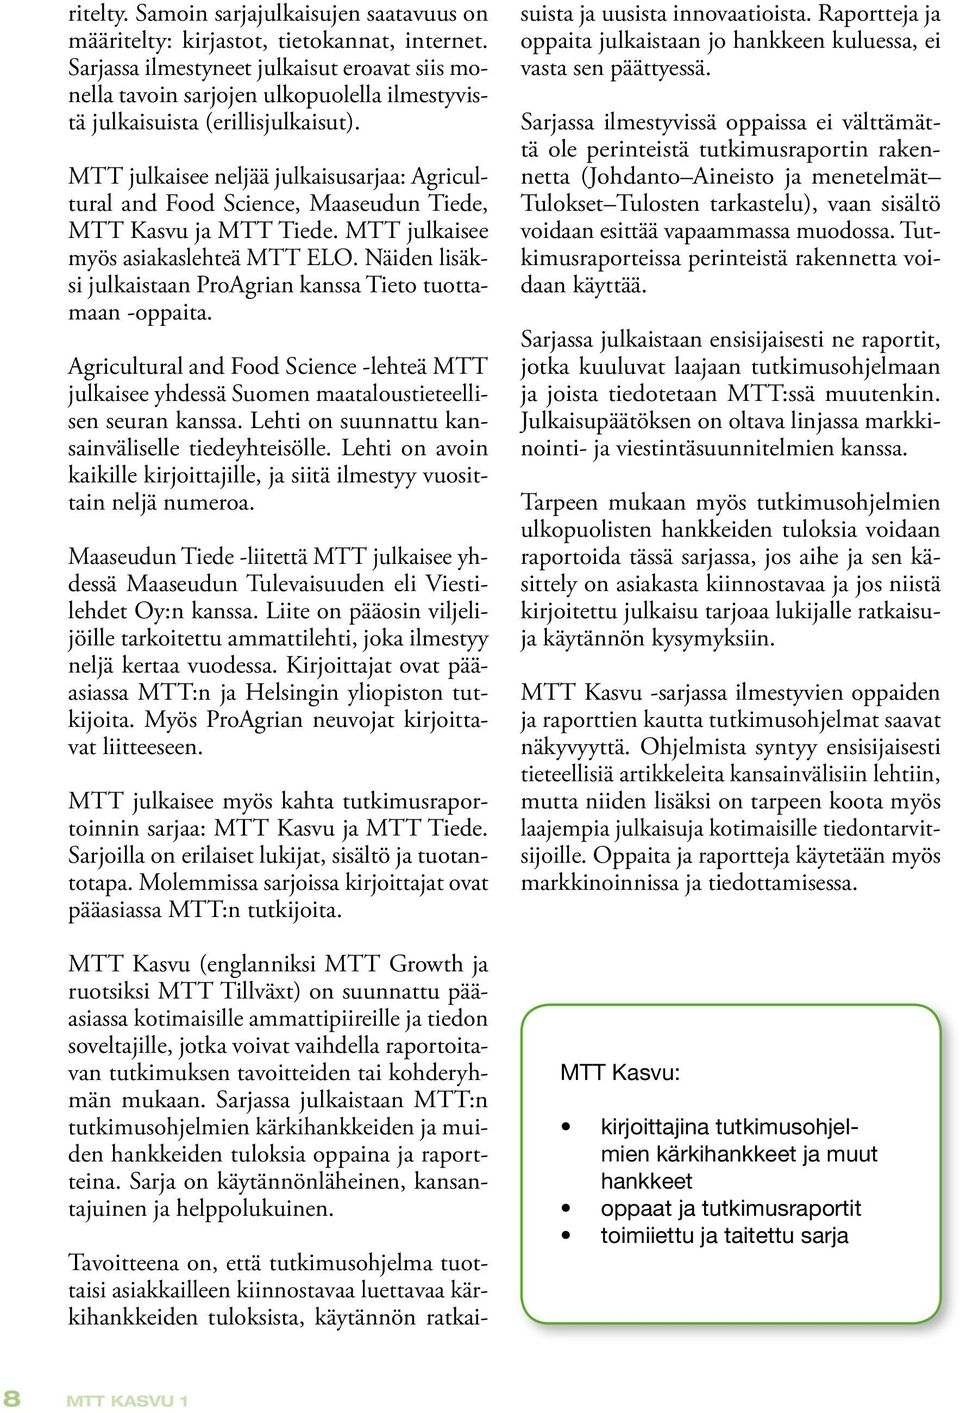 MTT julkaisee neljää julkaisusarjaa: Agricultural and Food Science, Maaseudun Tiede, MTT Kasvu ja MTT Tiede. MTT julkaisee myös asiakaslehteä MTT ELO.